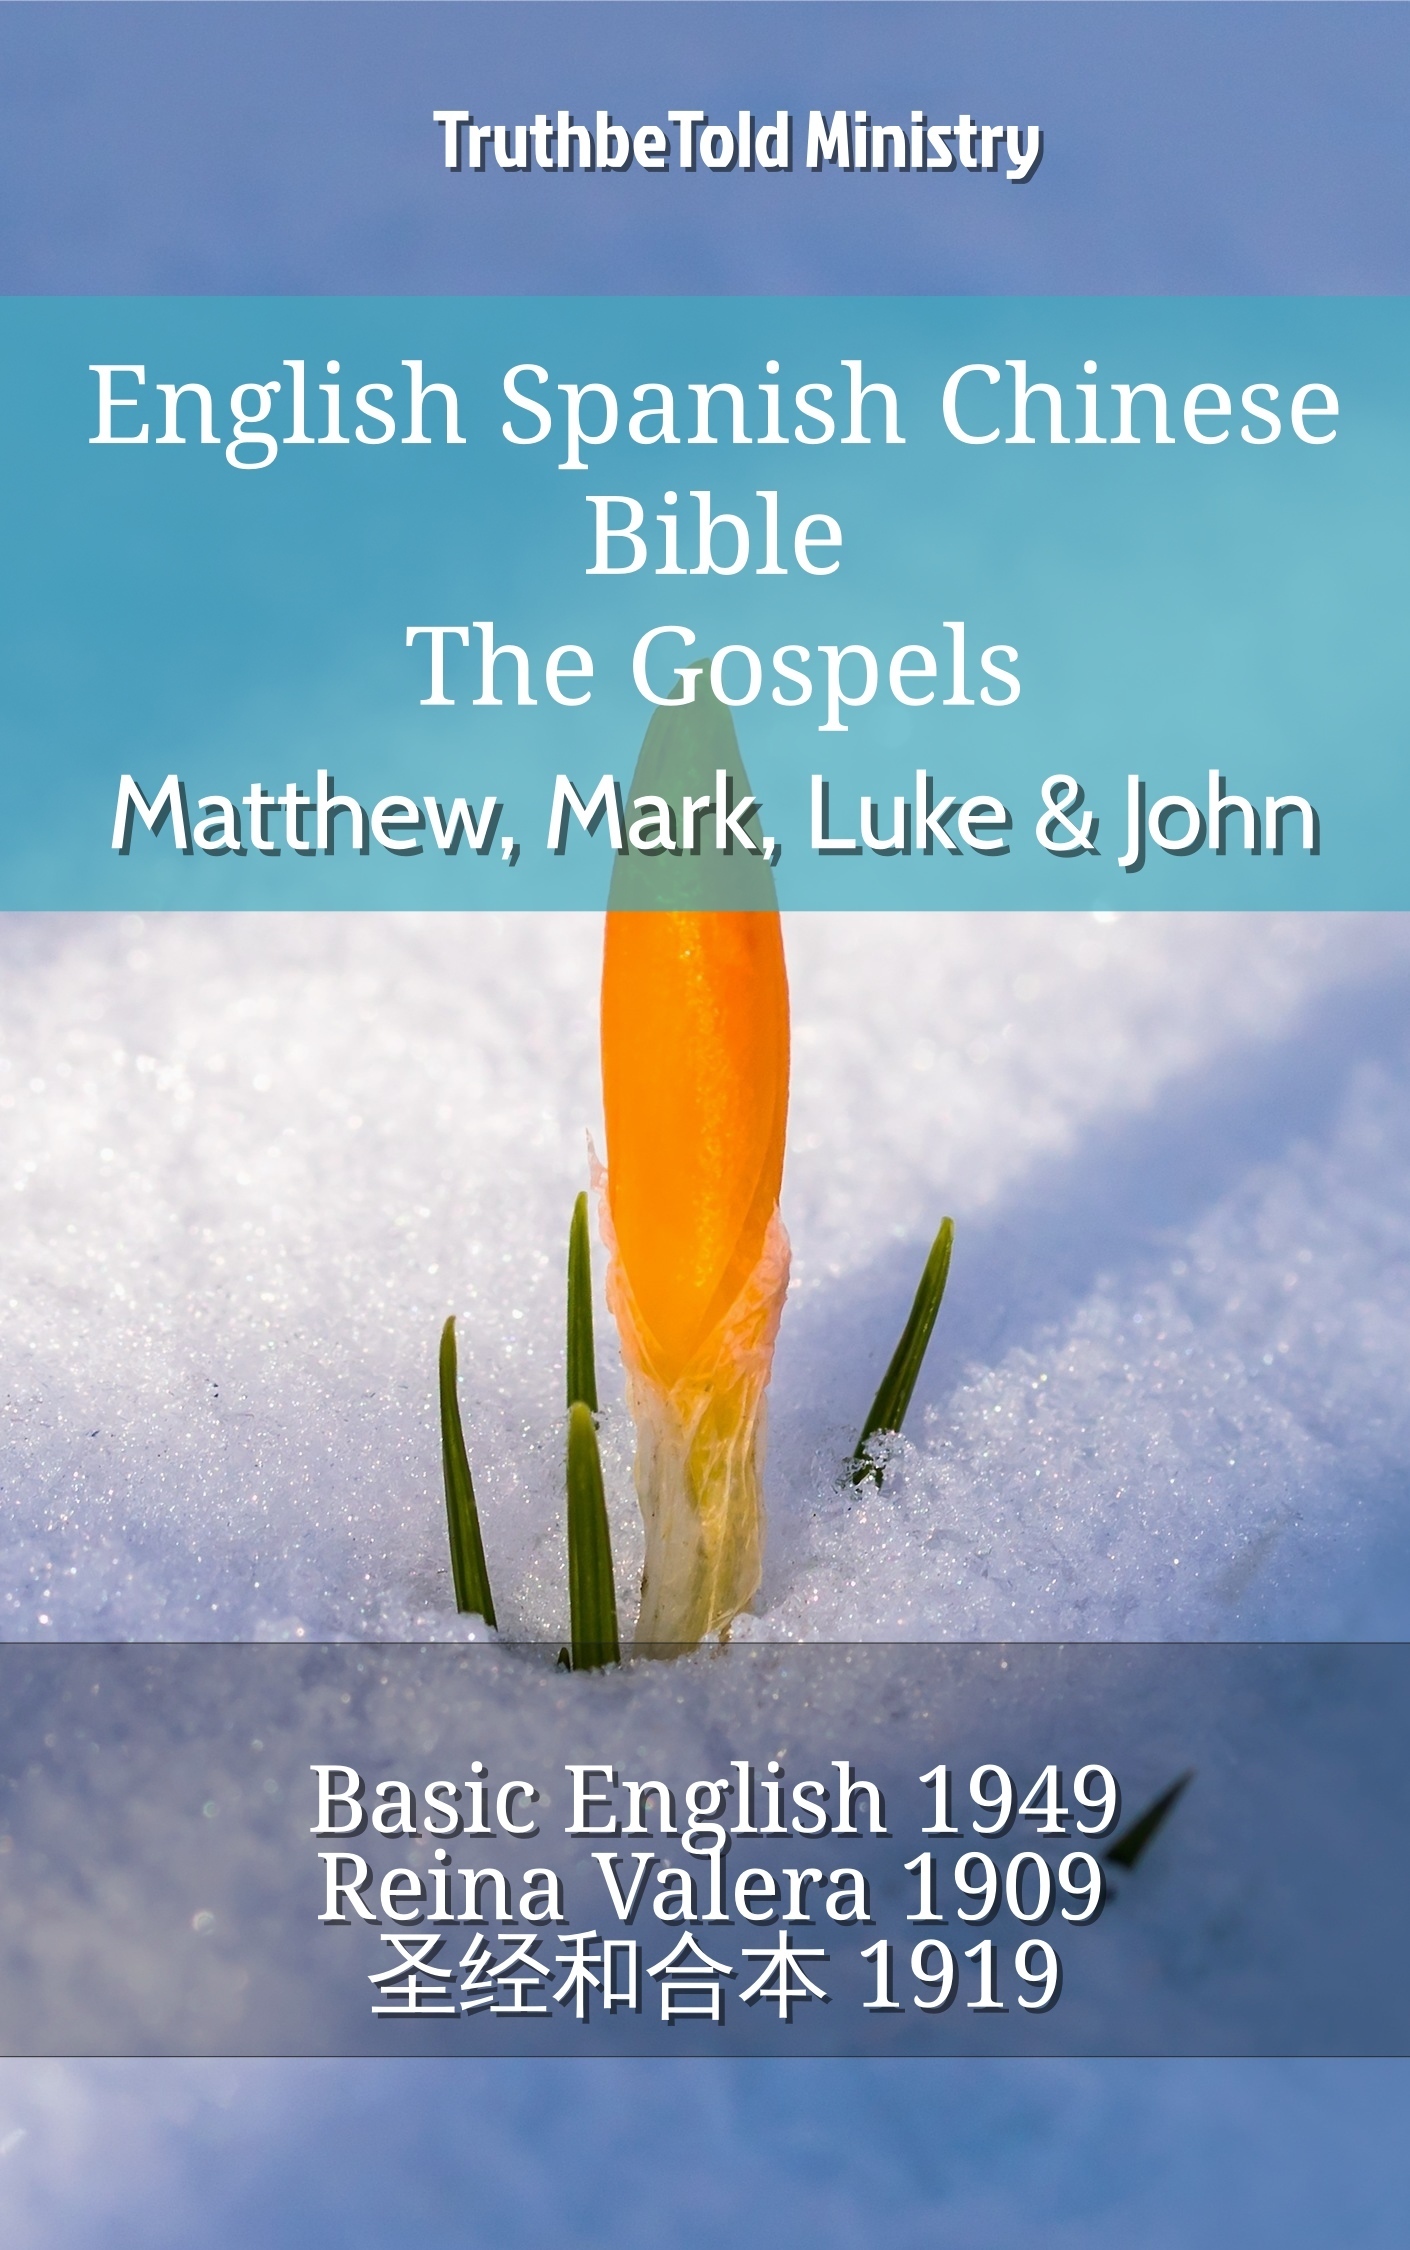 English Spanish Chinese Bible - The Gospels - Matthew, Mark, Luke & John